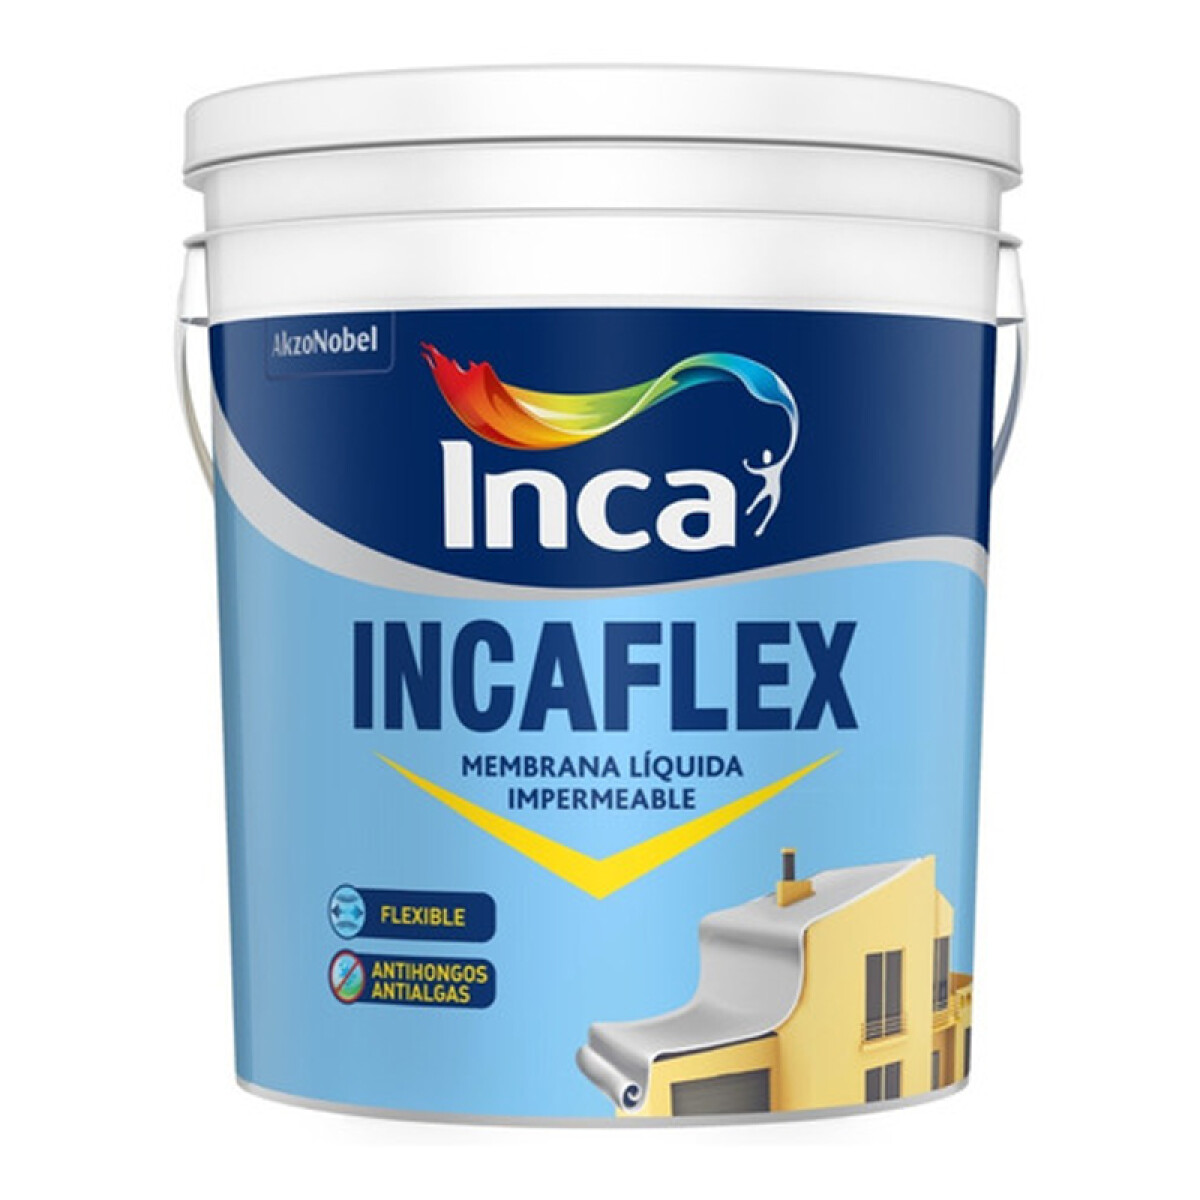 INCAFLEX 4L PROMO INCA 